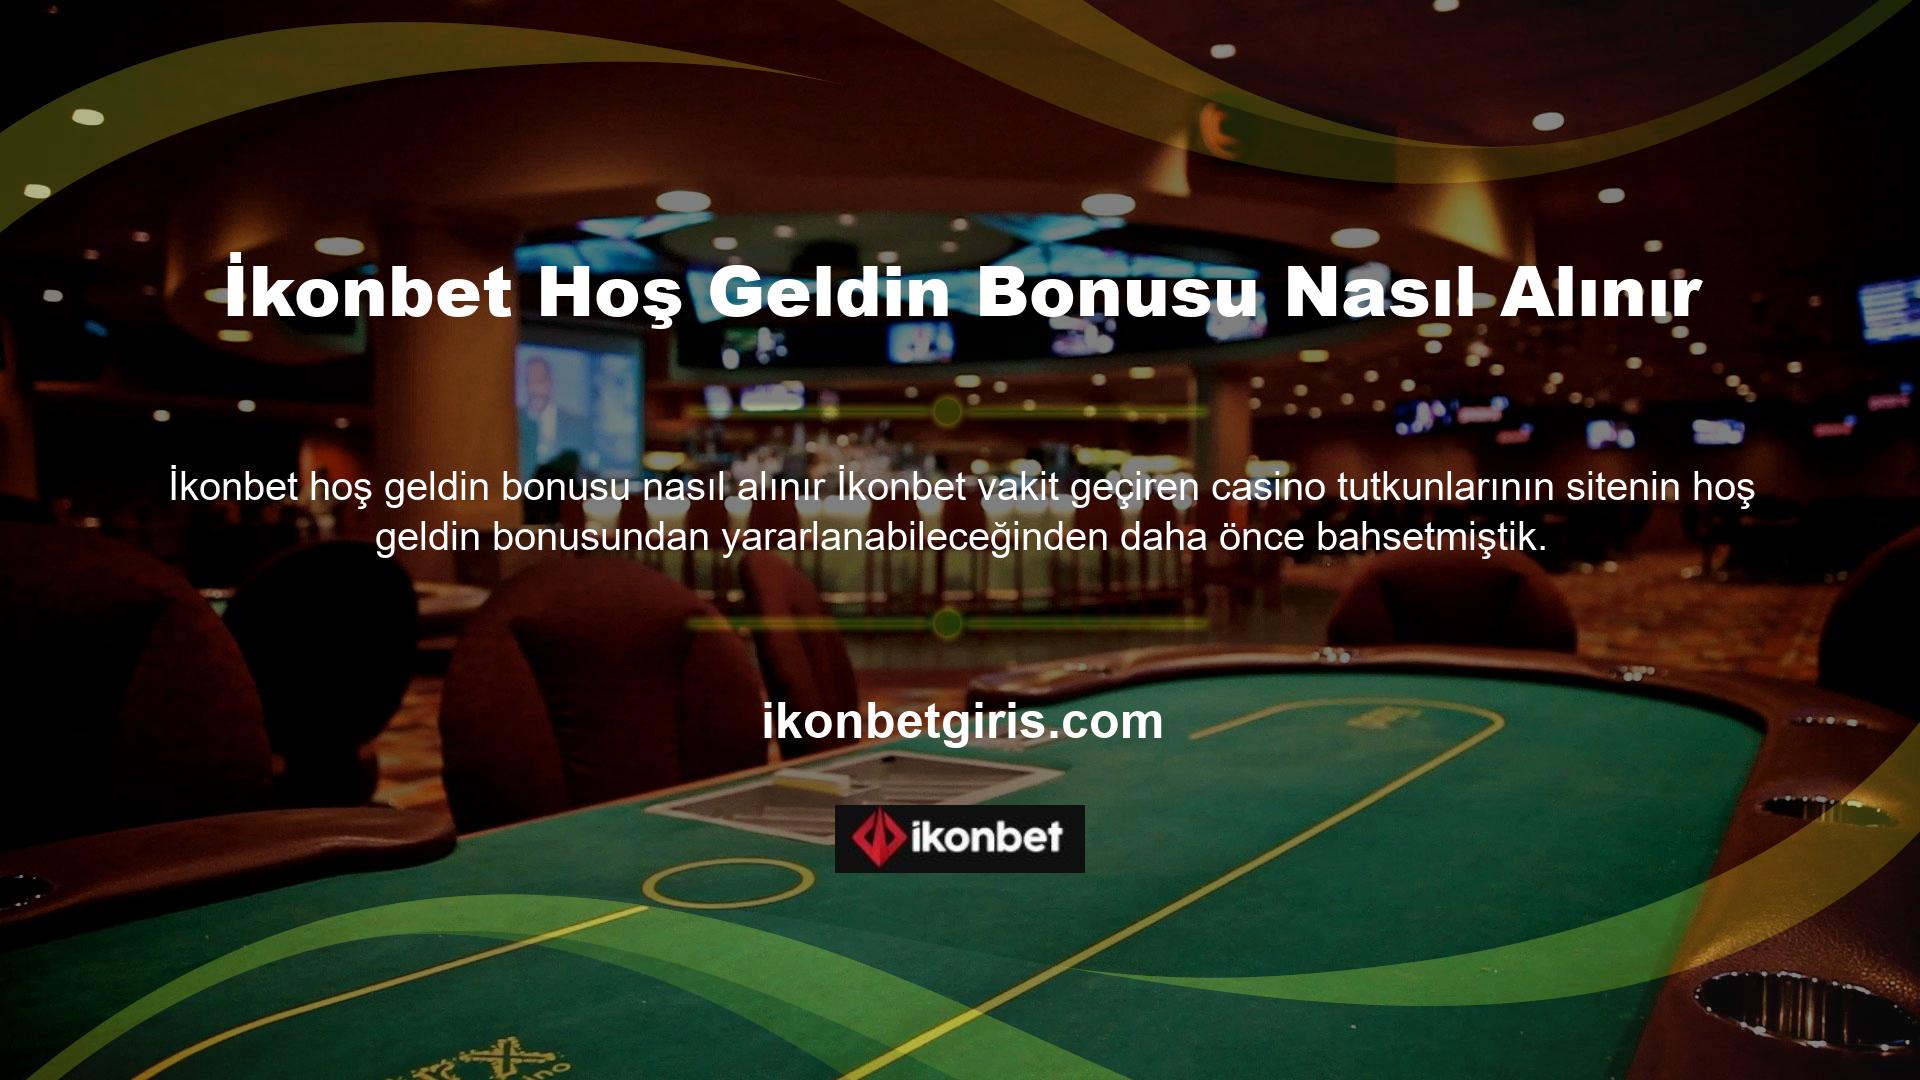 Bazı insanlar İkonbet web sitesinde hoşgeldin bonusu nasıl kullanılacağını bilmek istiyor